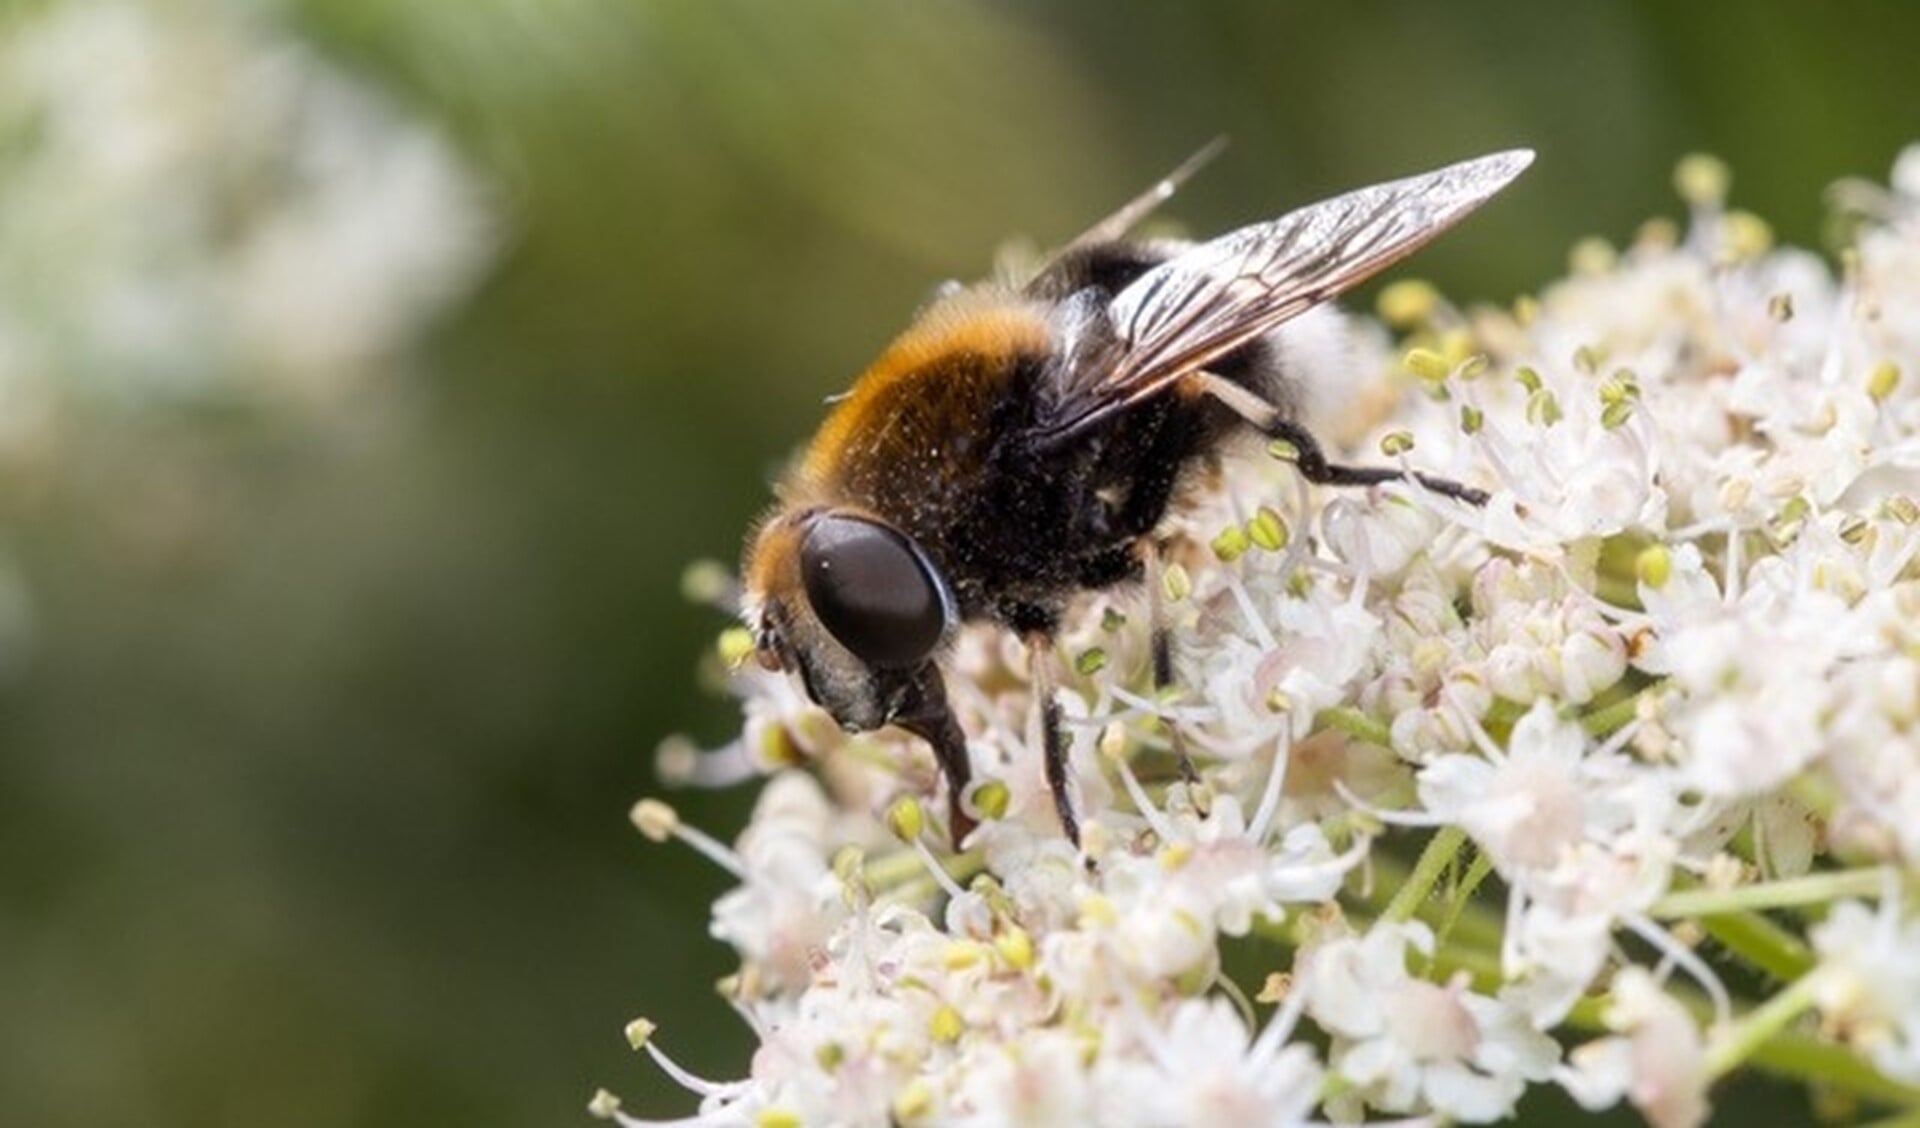 De hommelbijvlieg, Eristalis-intricaria is een voorbeeld van een wilde bijensoort. Foto: Arno van Berge Henegouwen